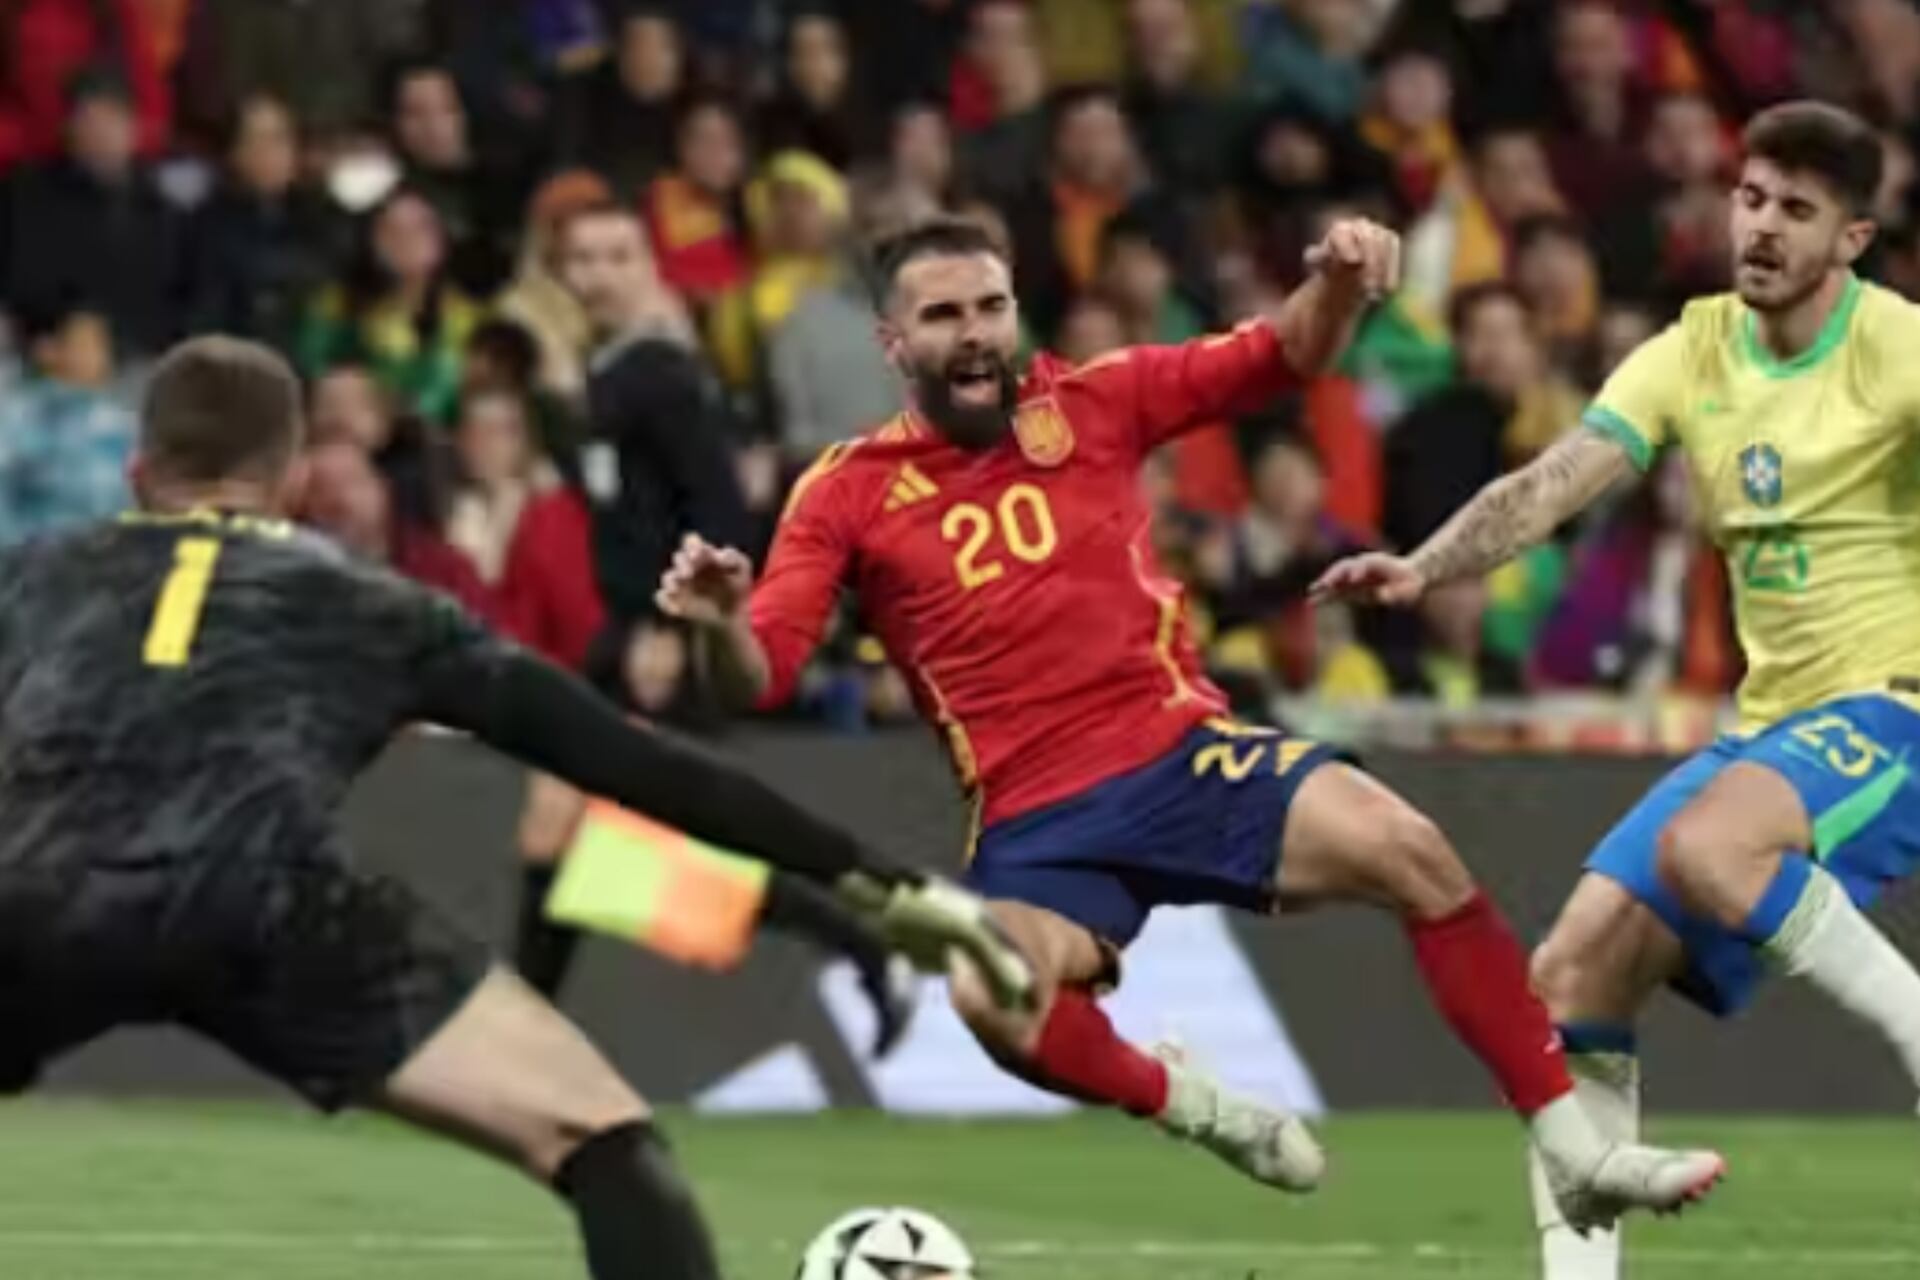 (VIDEO) De héroe a villano, Brasil empató a España al último gracias a Carvajal